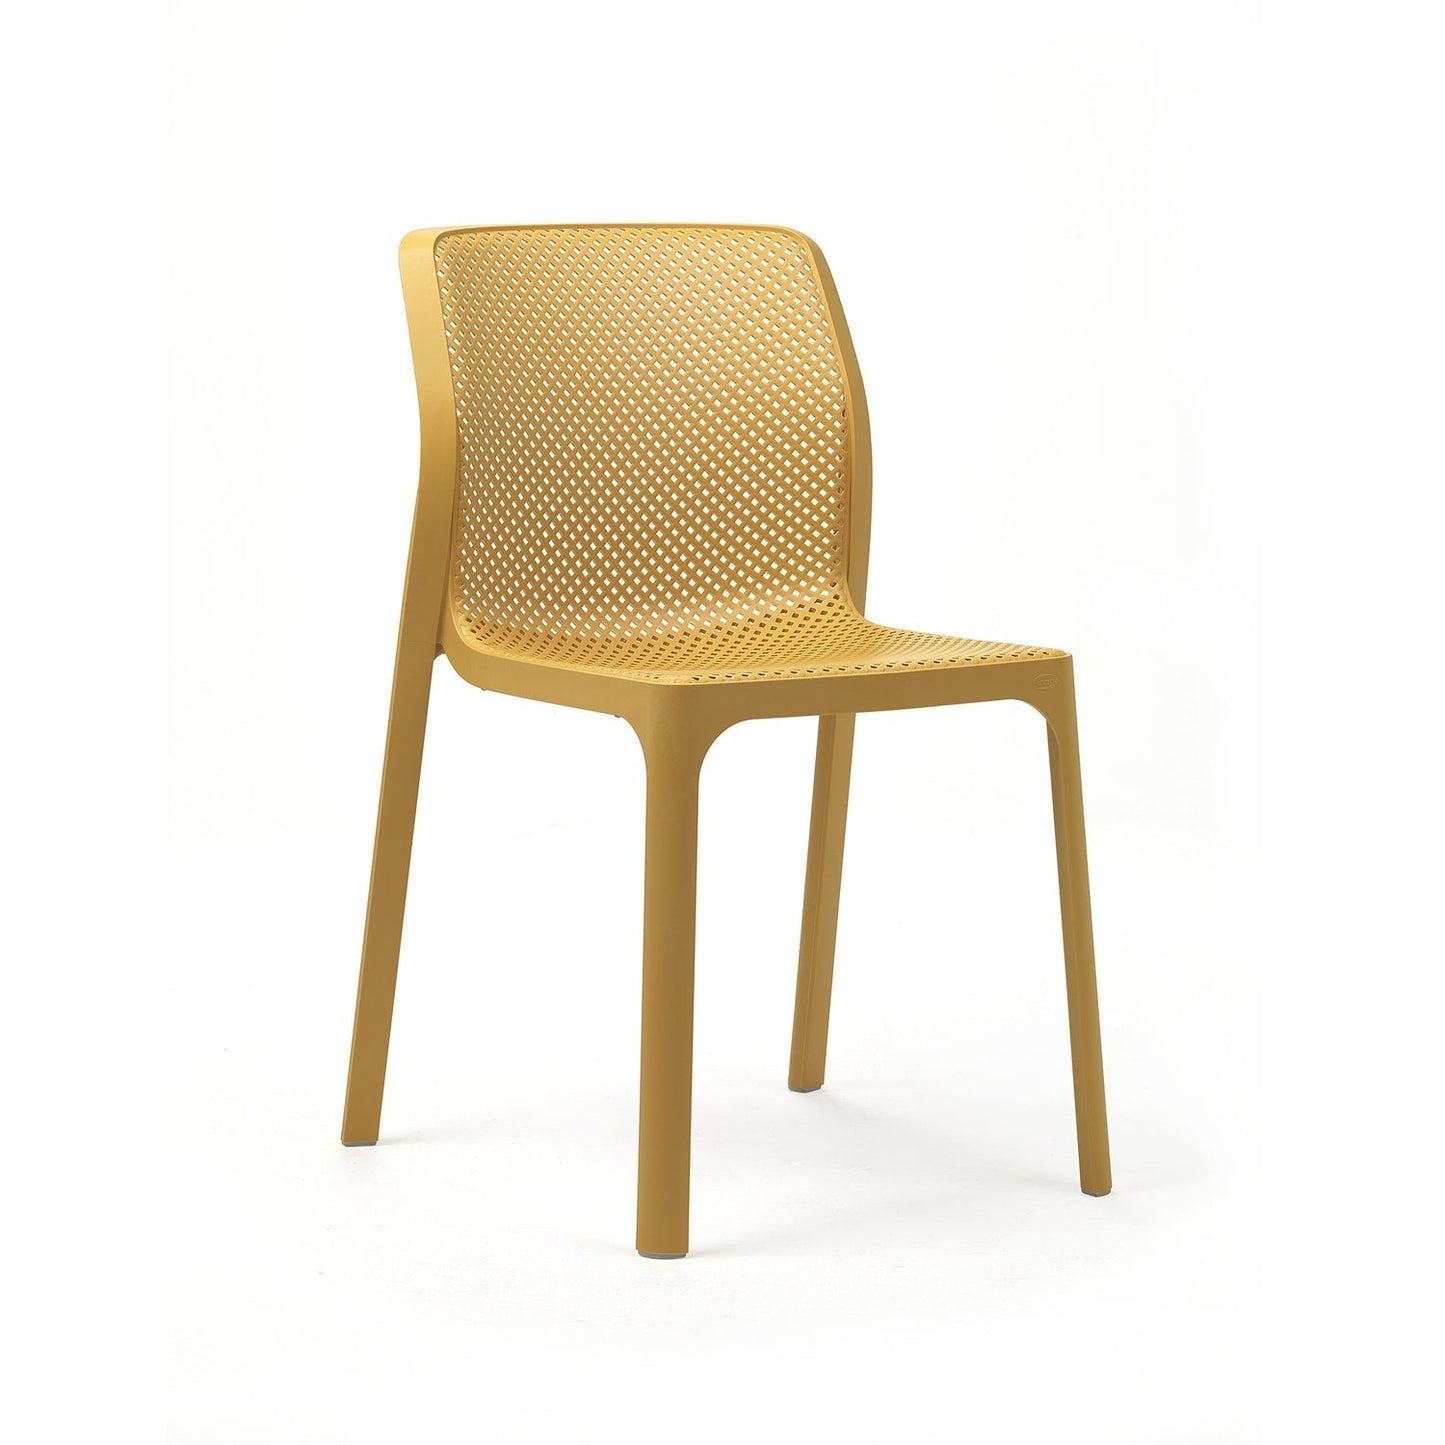 Bit Indoor/ Outdoor Chair By Nardi In Mustard